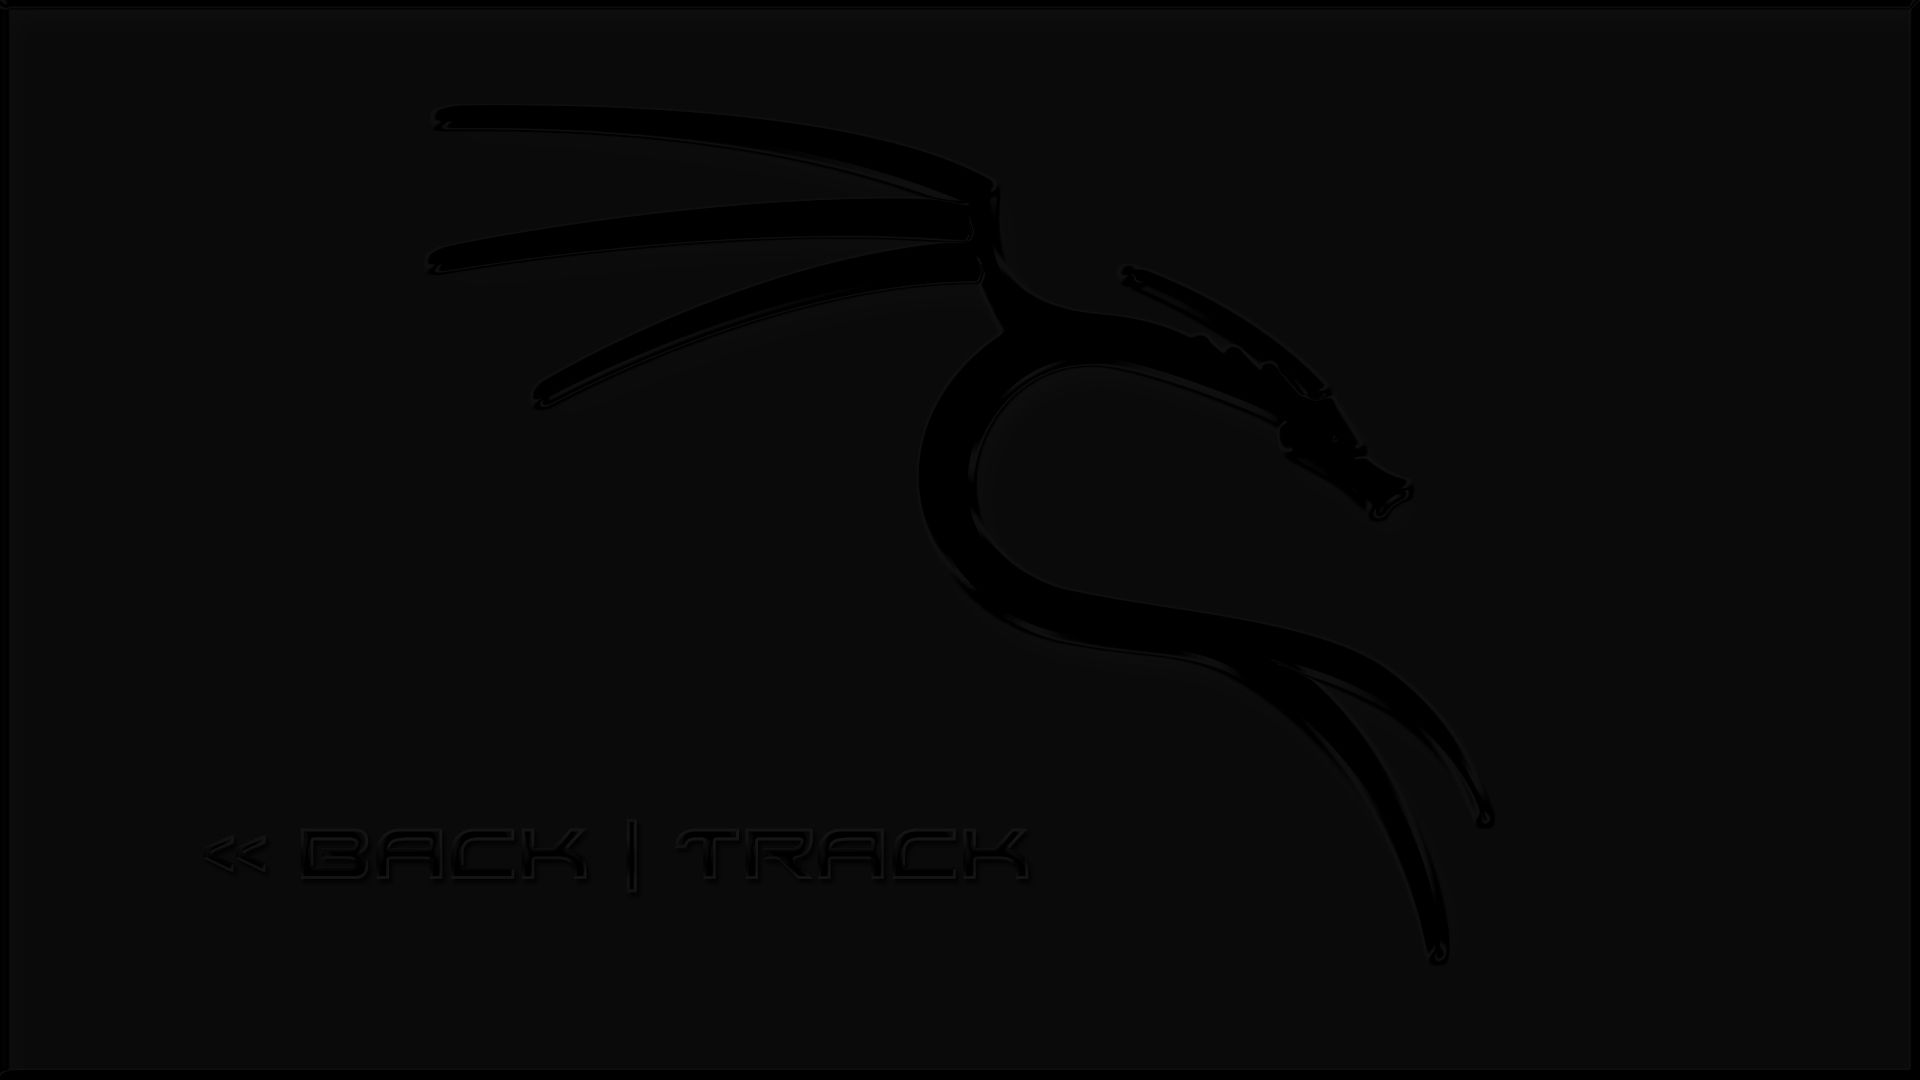 Backtrack Wallpaper. Backtrack Wallpaper, Backtrack Ronin Wallpaper and BackTrack Linux Wallpaper